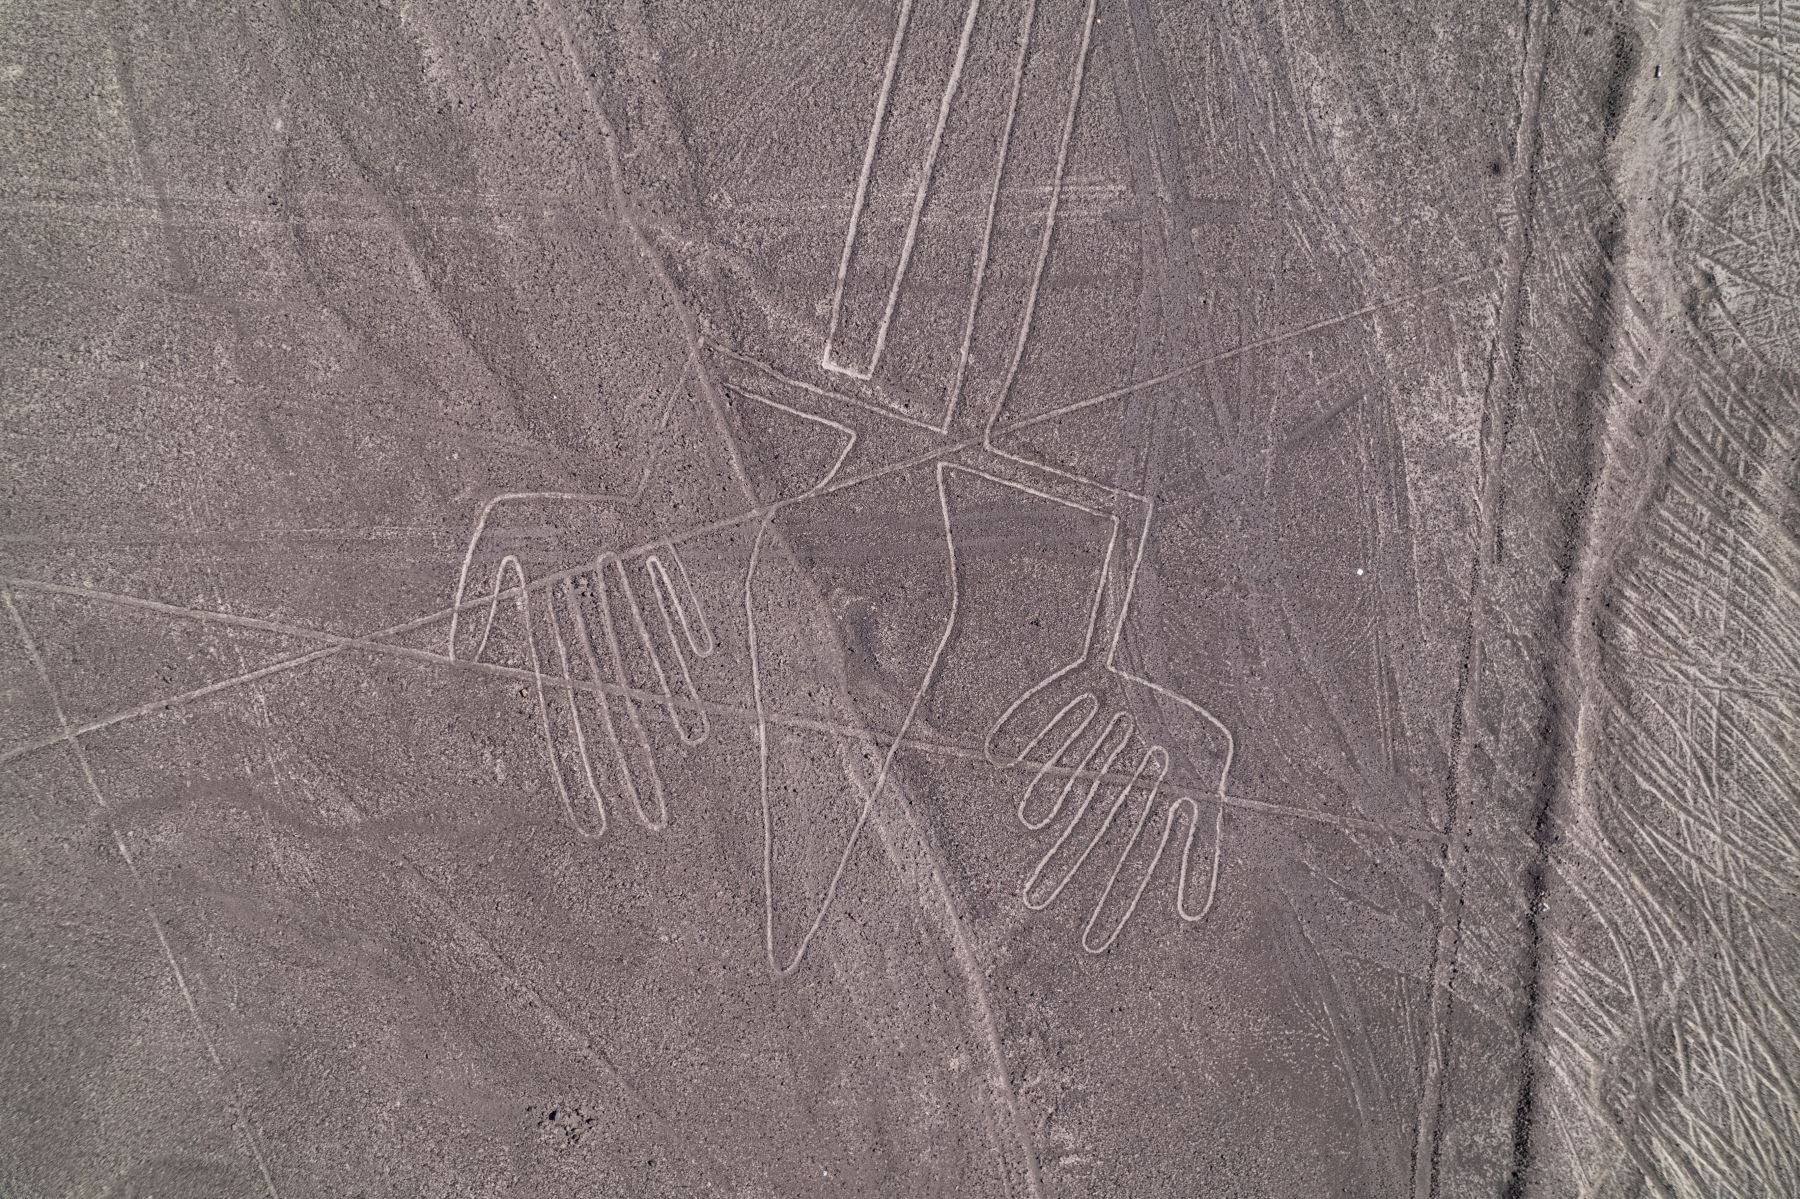 Las famosas Líneas de Nazca, reconocidas como Patrimonio de la Humanidad por la UNESCO, son geoglifos de más de 2.000 años de antigüedad con figuras geométricas y de animales que sólo pueden verse desde el cielo.
Foto: AFP